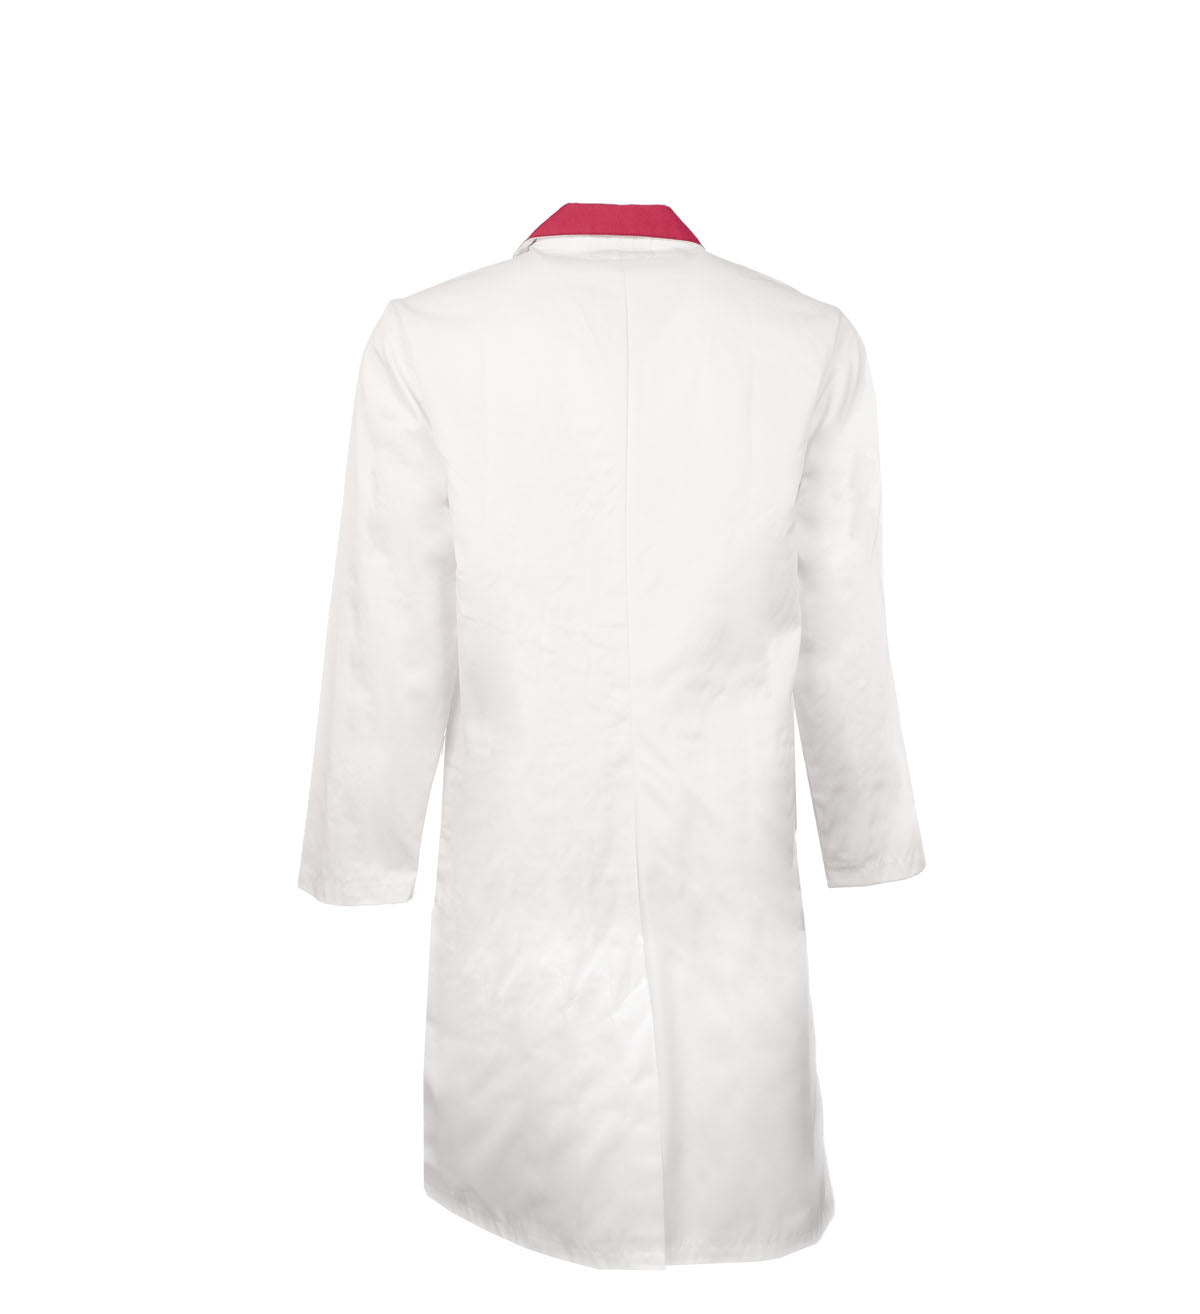 Sarrau avec trois poches intérieure Premium Uniforms #6023 blanc dos